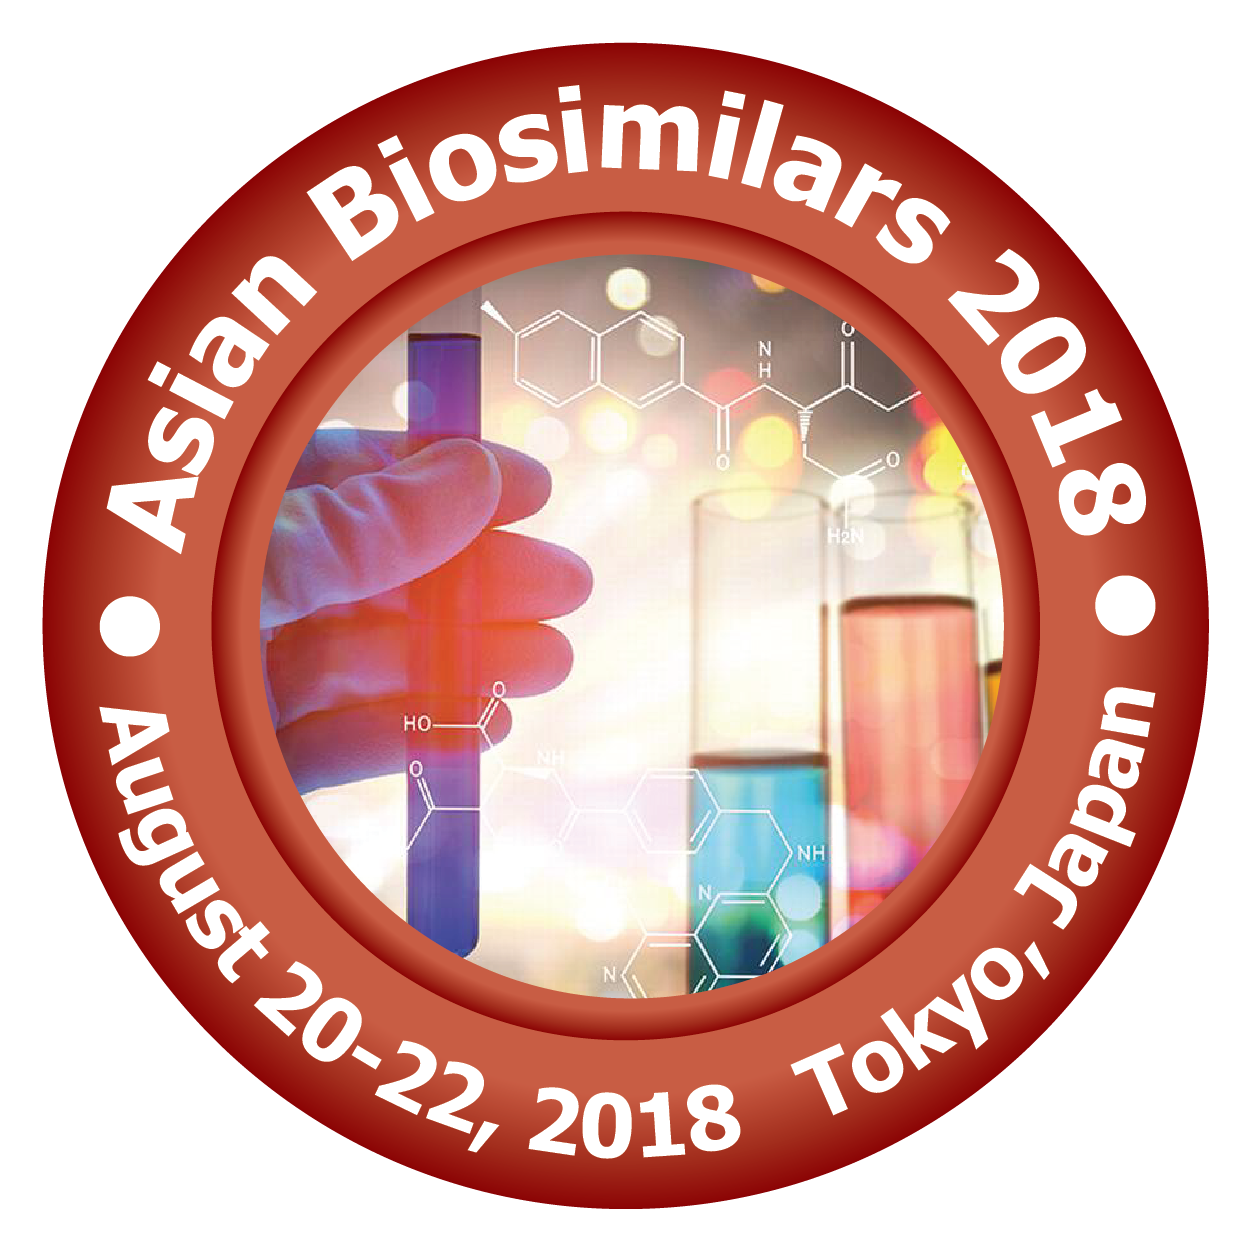 Photos of 12th Asian Biologics and Biosimilars Congress